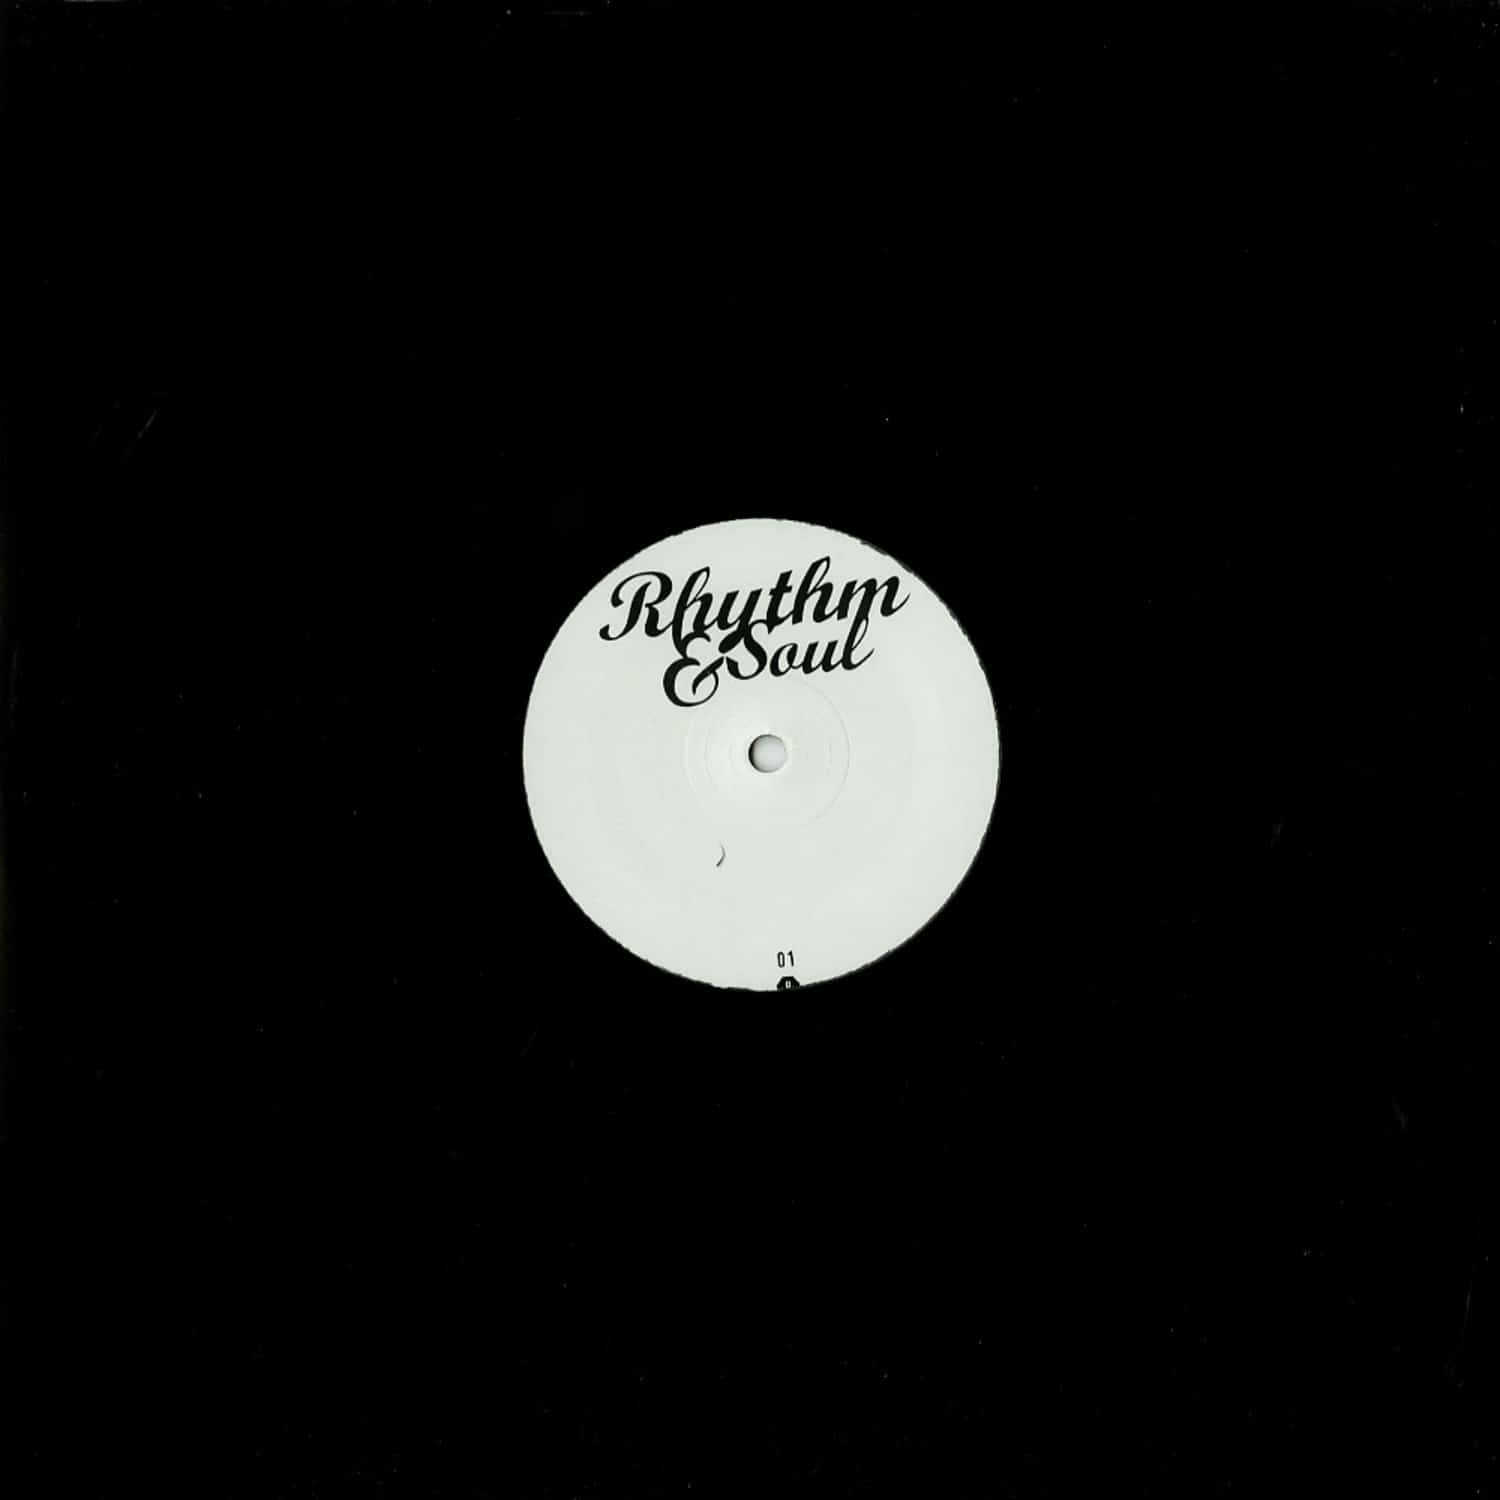 Rhythm & Soul - RHYTHM & SOUL 01 